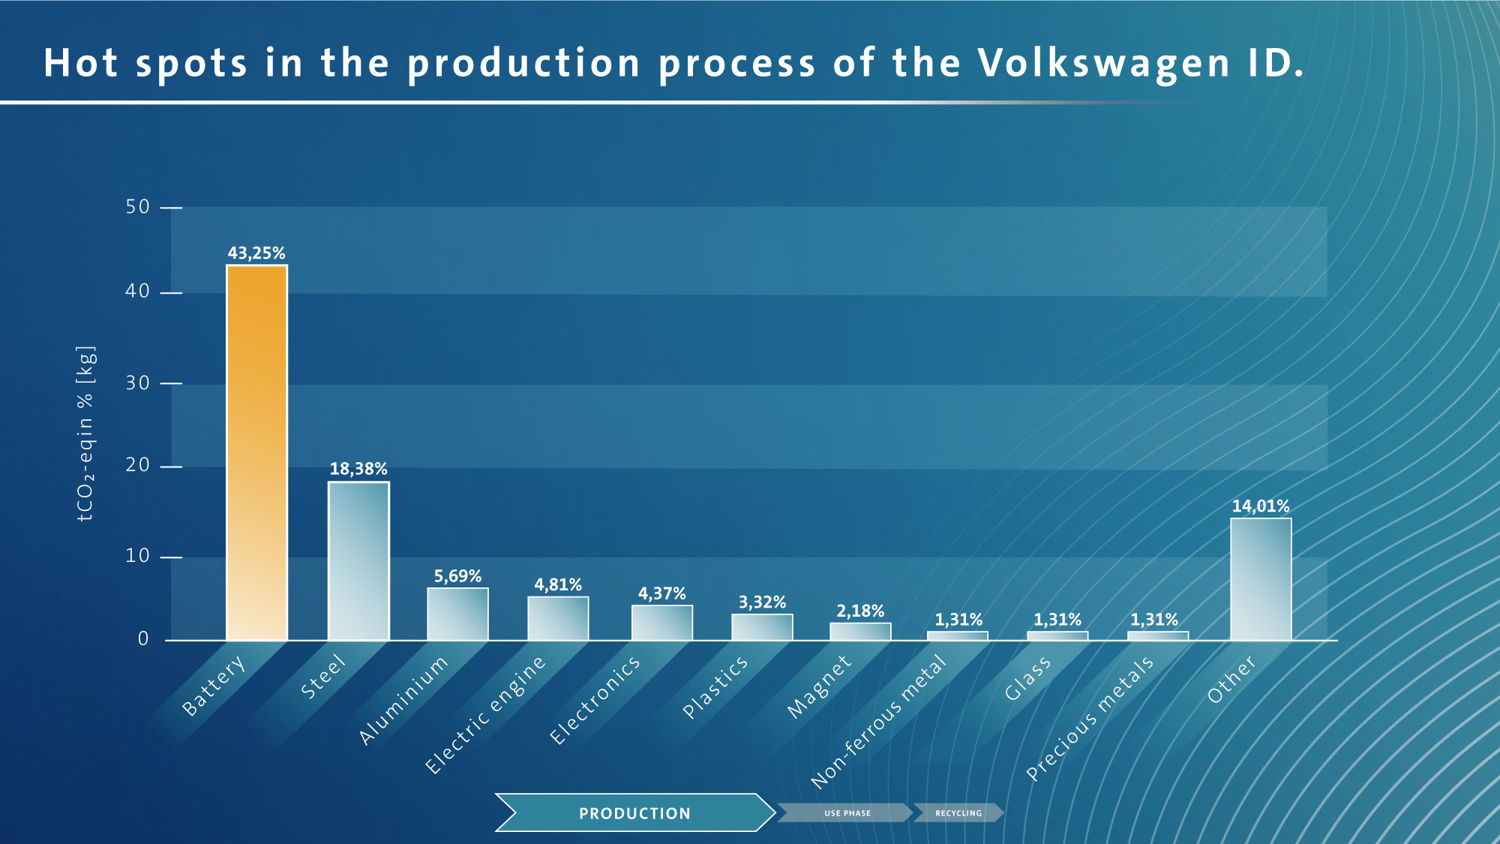 Puntos álgidos de la fabricación del Volkswagen ID. La batería genera 40 % de las emisiones de CO2. Ahora, el ACV ayuda a descubrir el potencial de optimización, por ejemplo, al usar energía verde para producir las celdas de las baterías